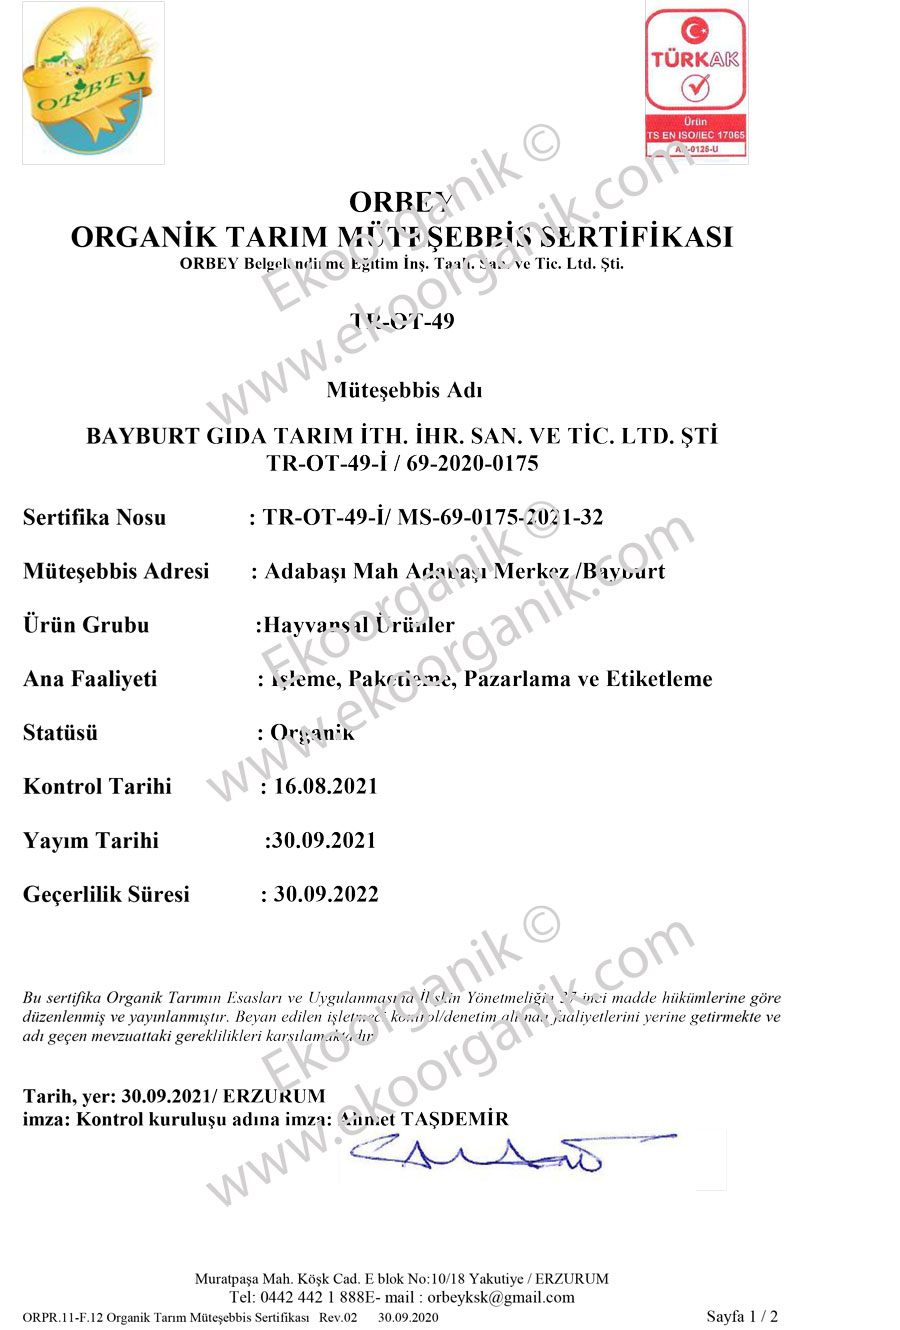 Bayburt Gıda Tarım, Turkey ORBEY Certificate